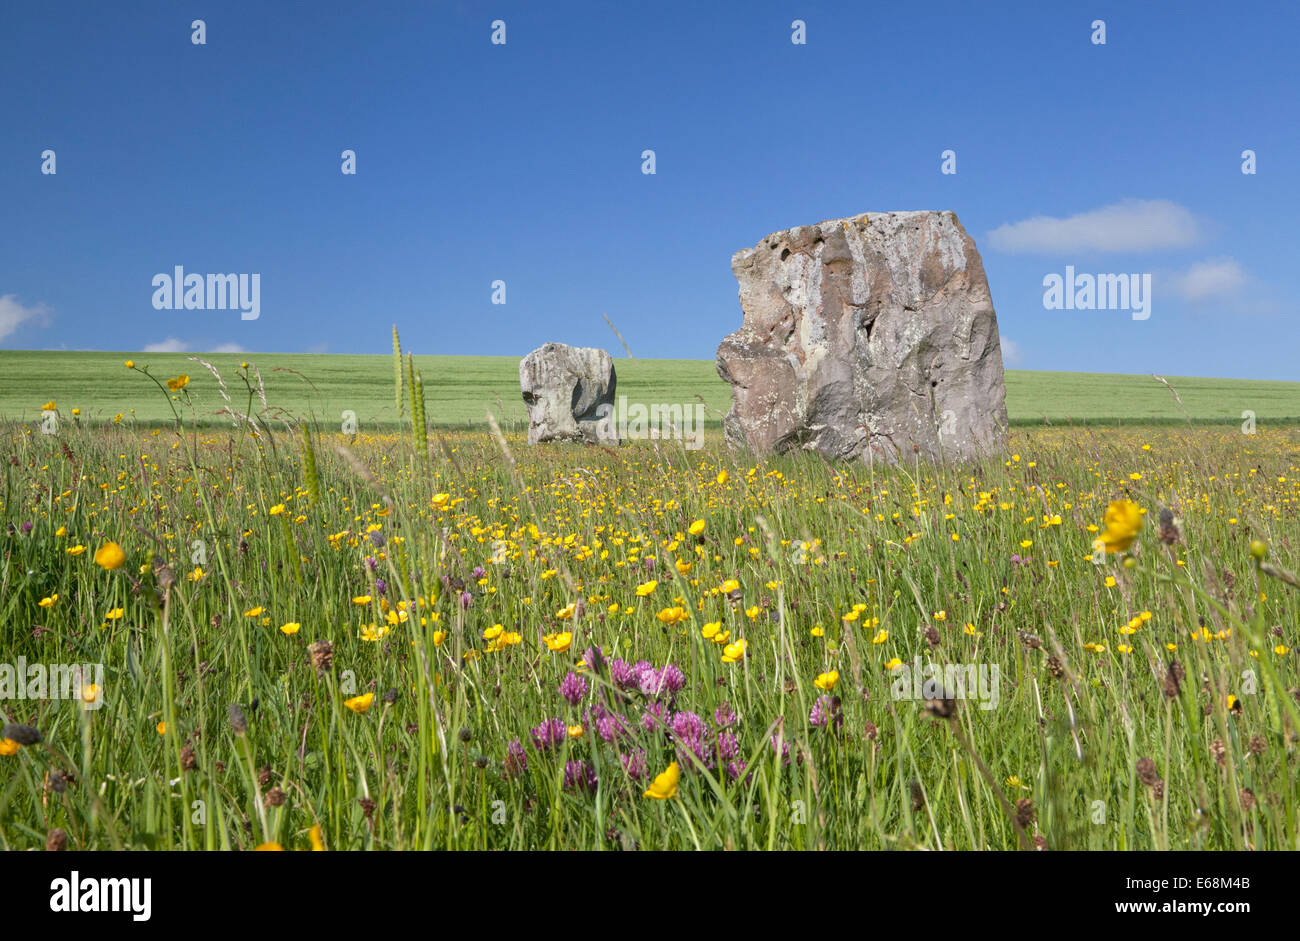 Stehenden Steinen, die Bestandteil der West Kennet "Avenue" in Avebury in Wiltshire, England. Stockfoto